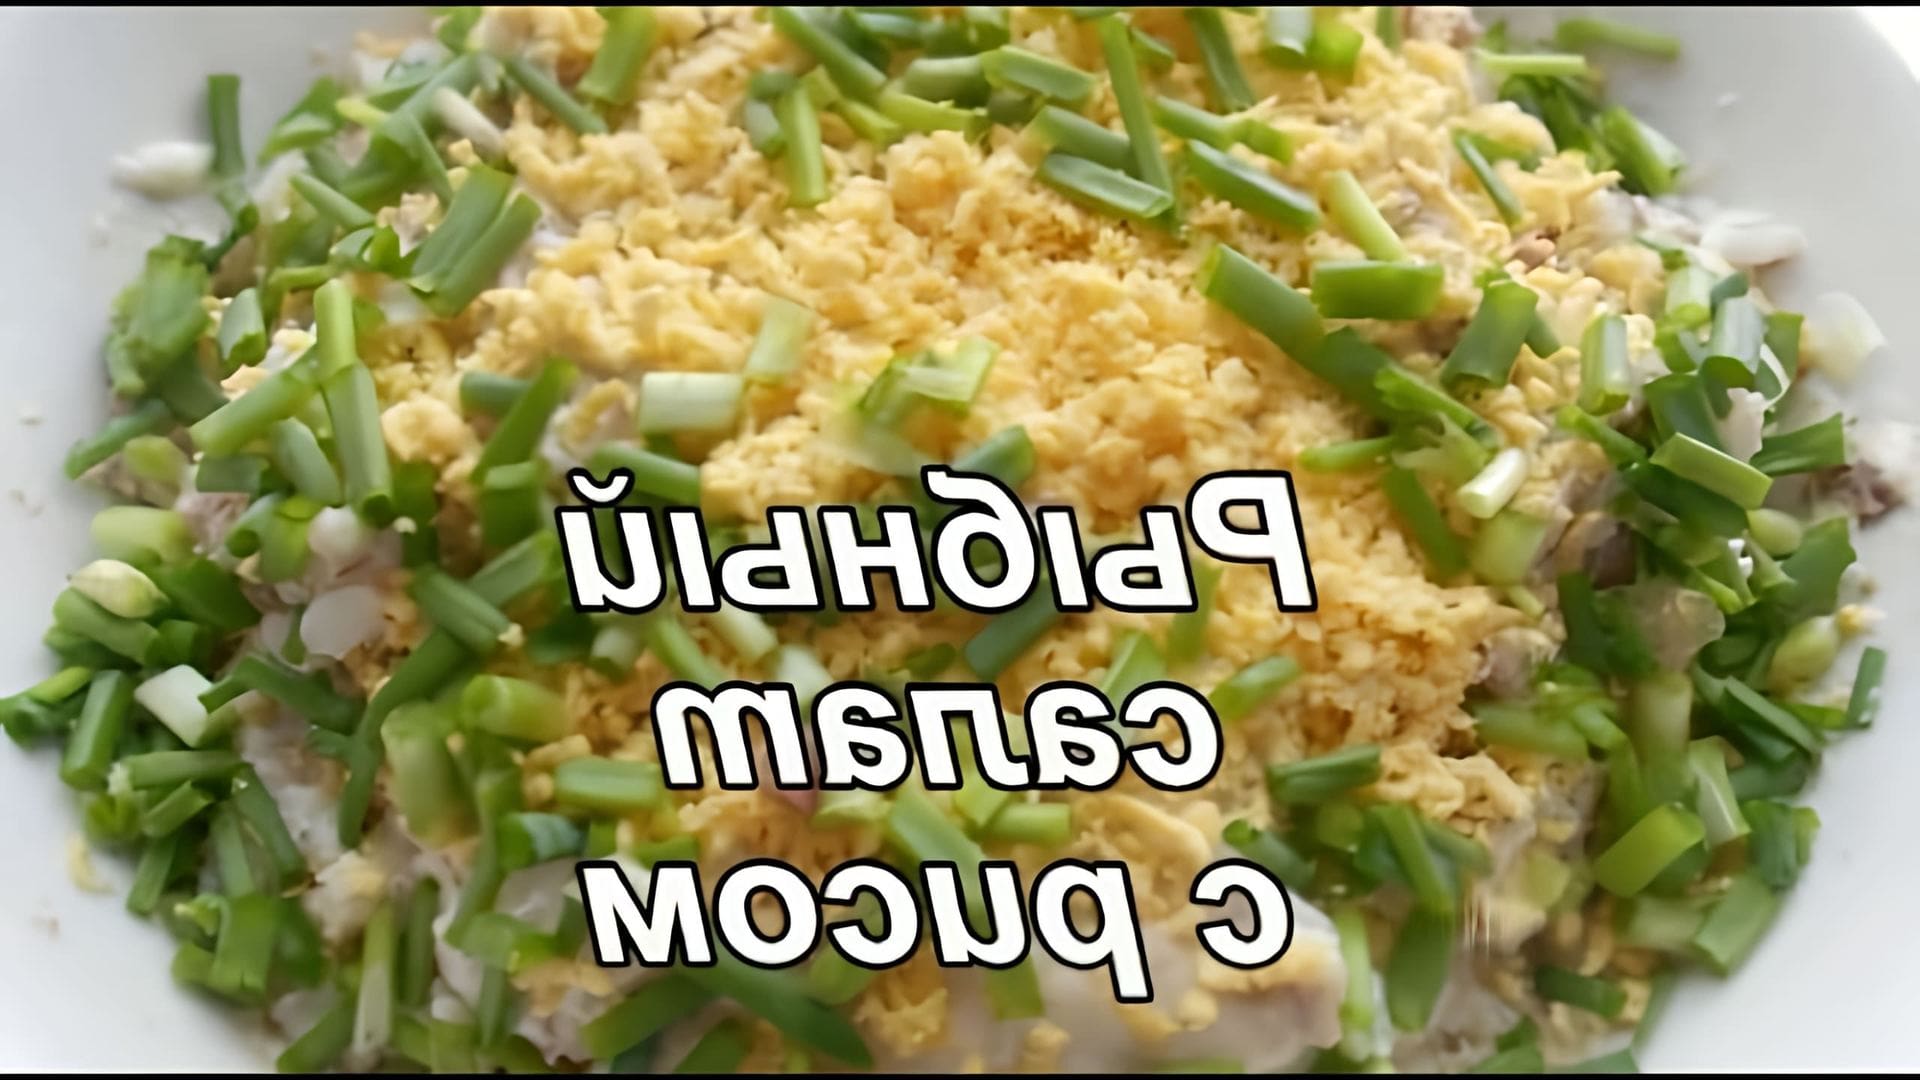 В этом видео демонстрируется процесс приготовления рыбного салата с рисом